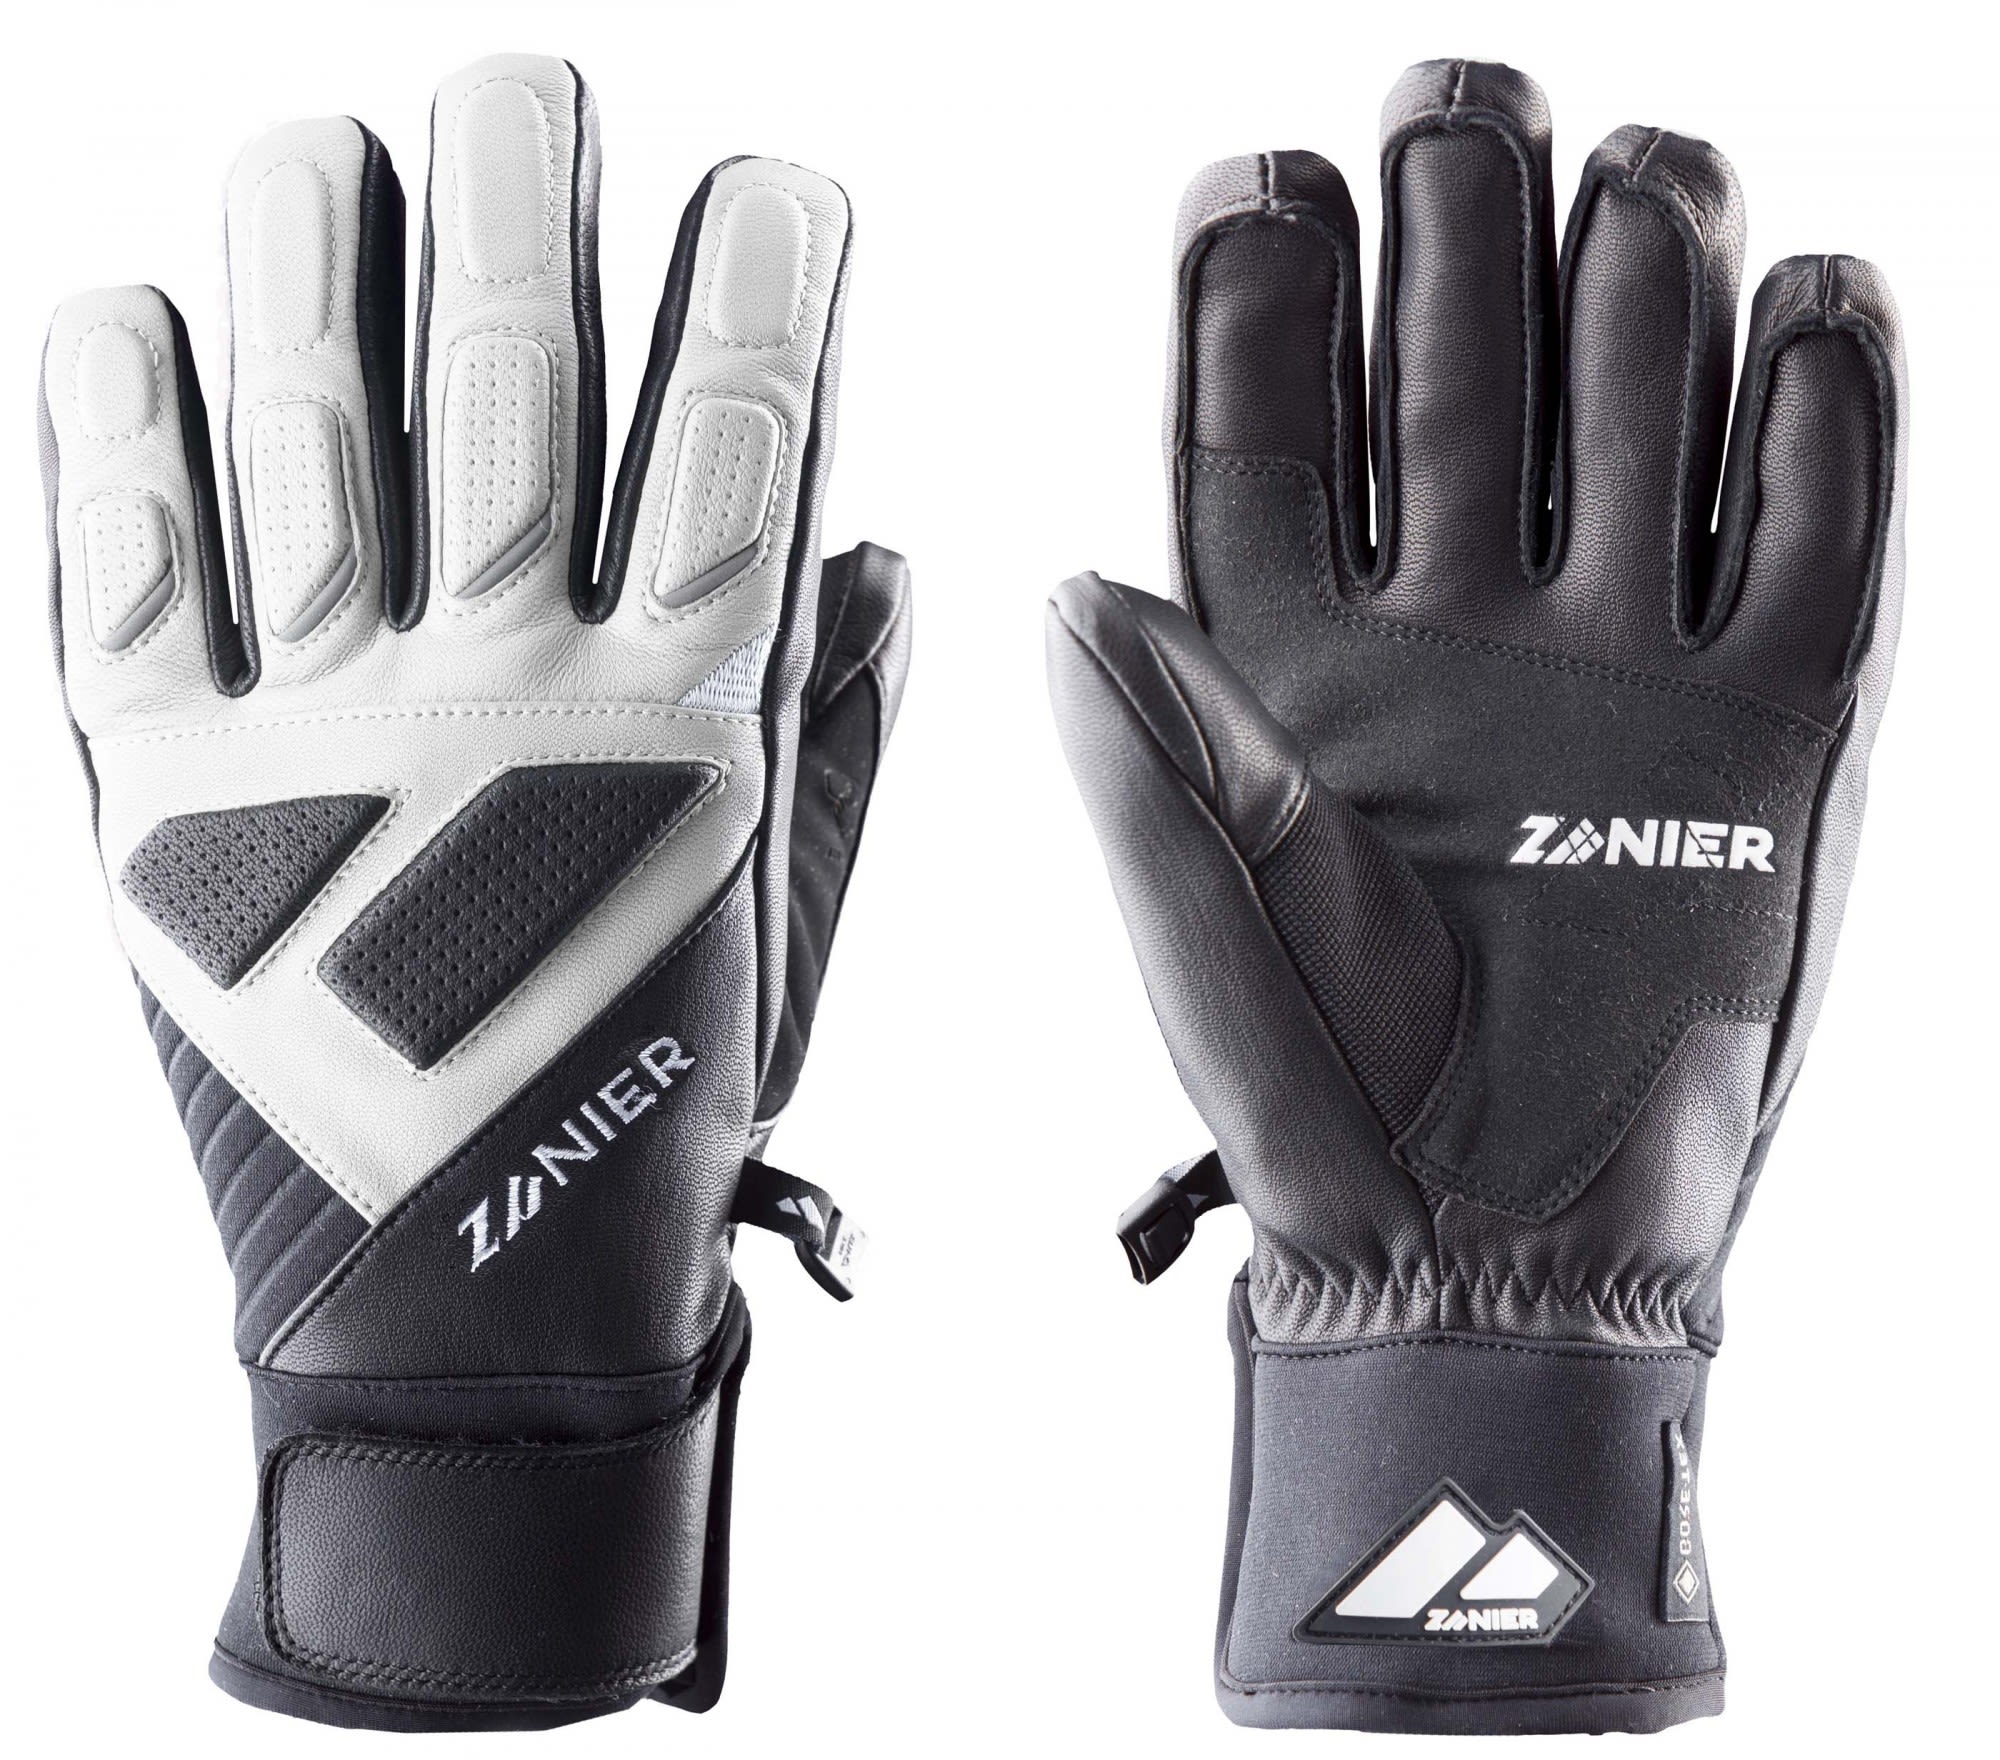 Zanier Warmer griffiger Handschuh Black - White